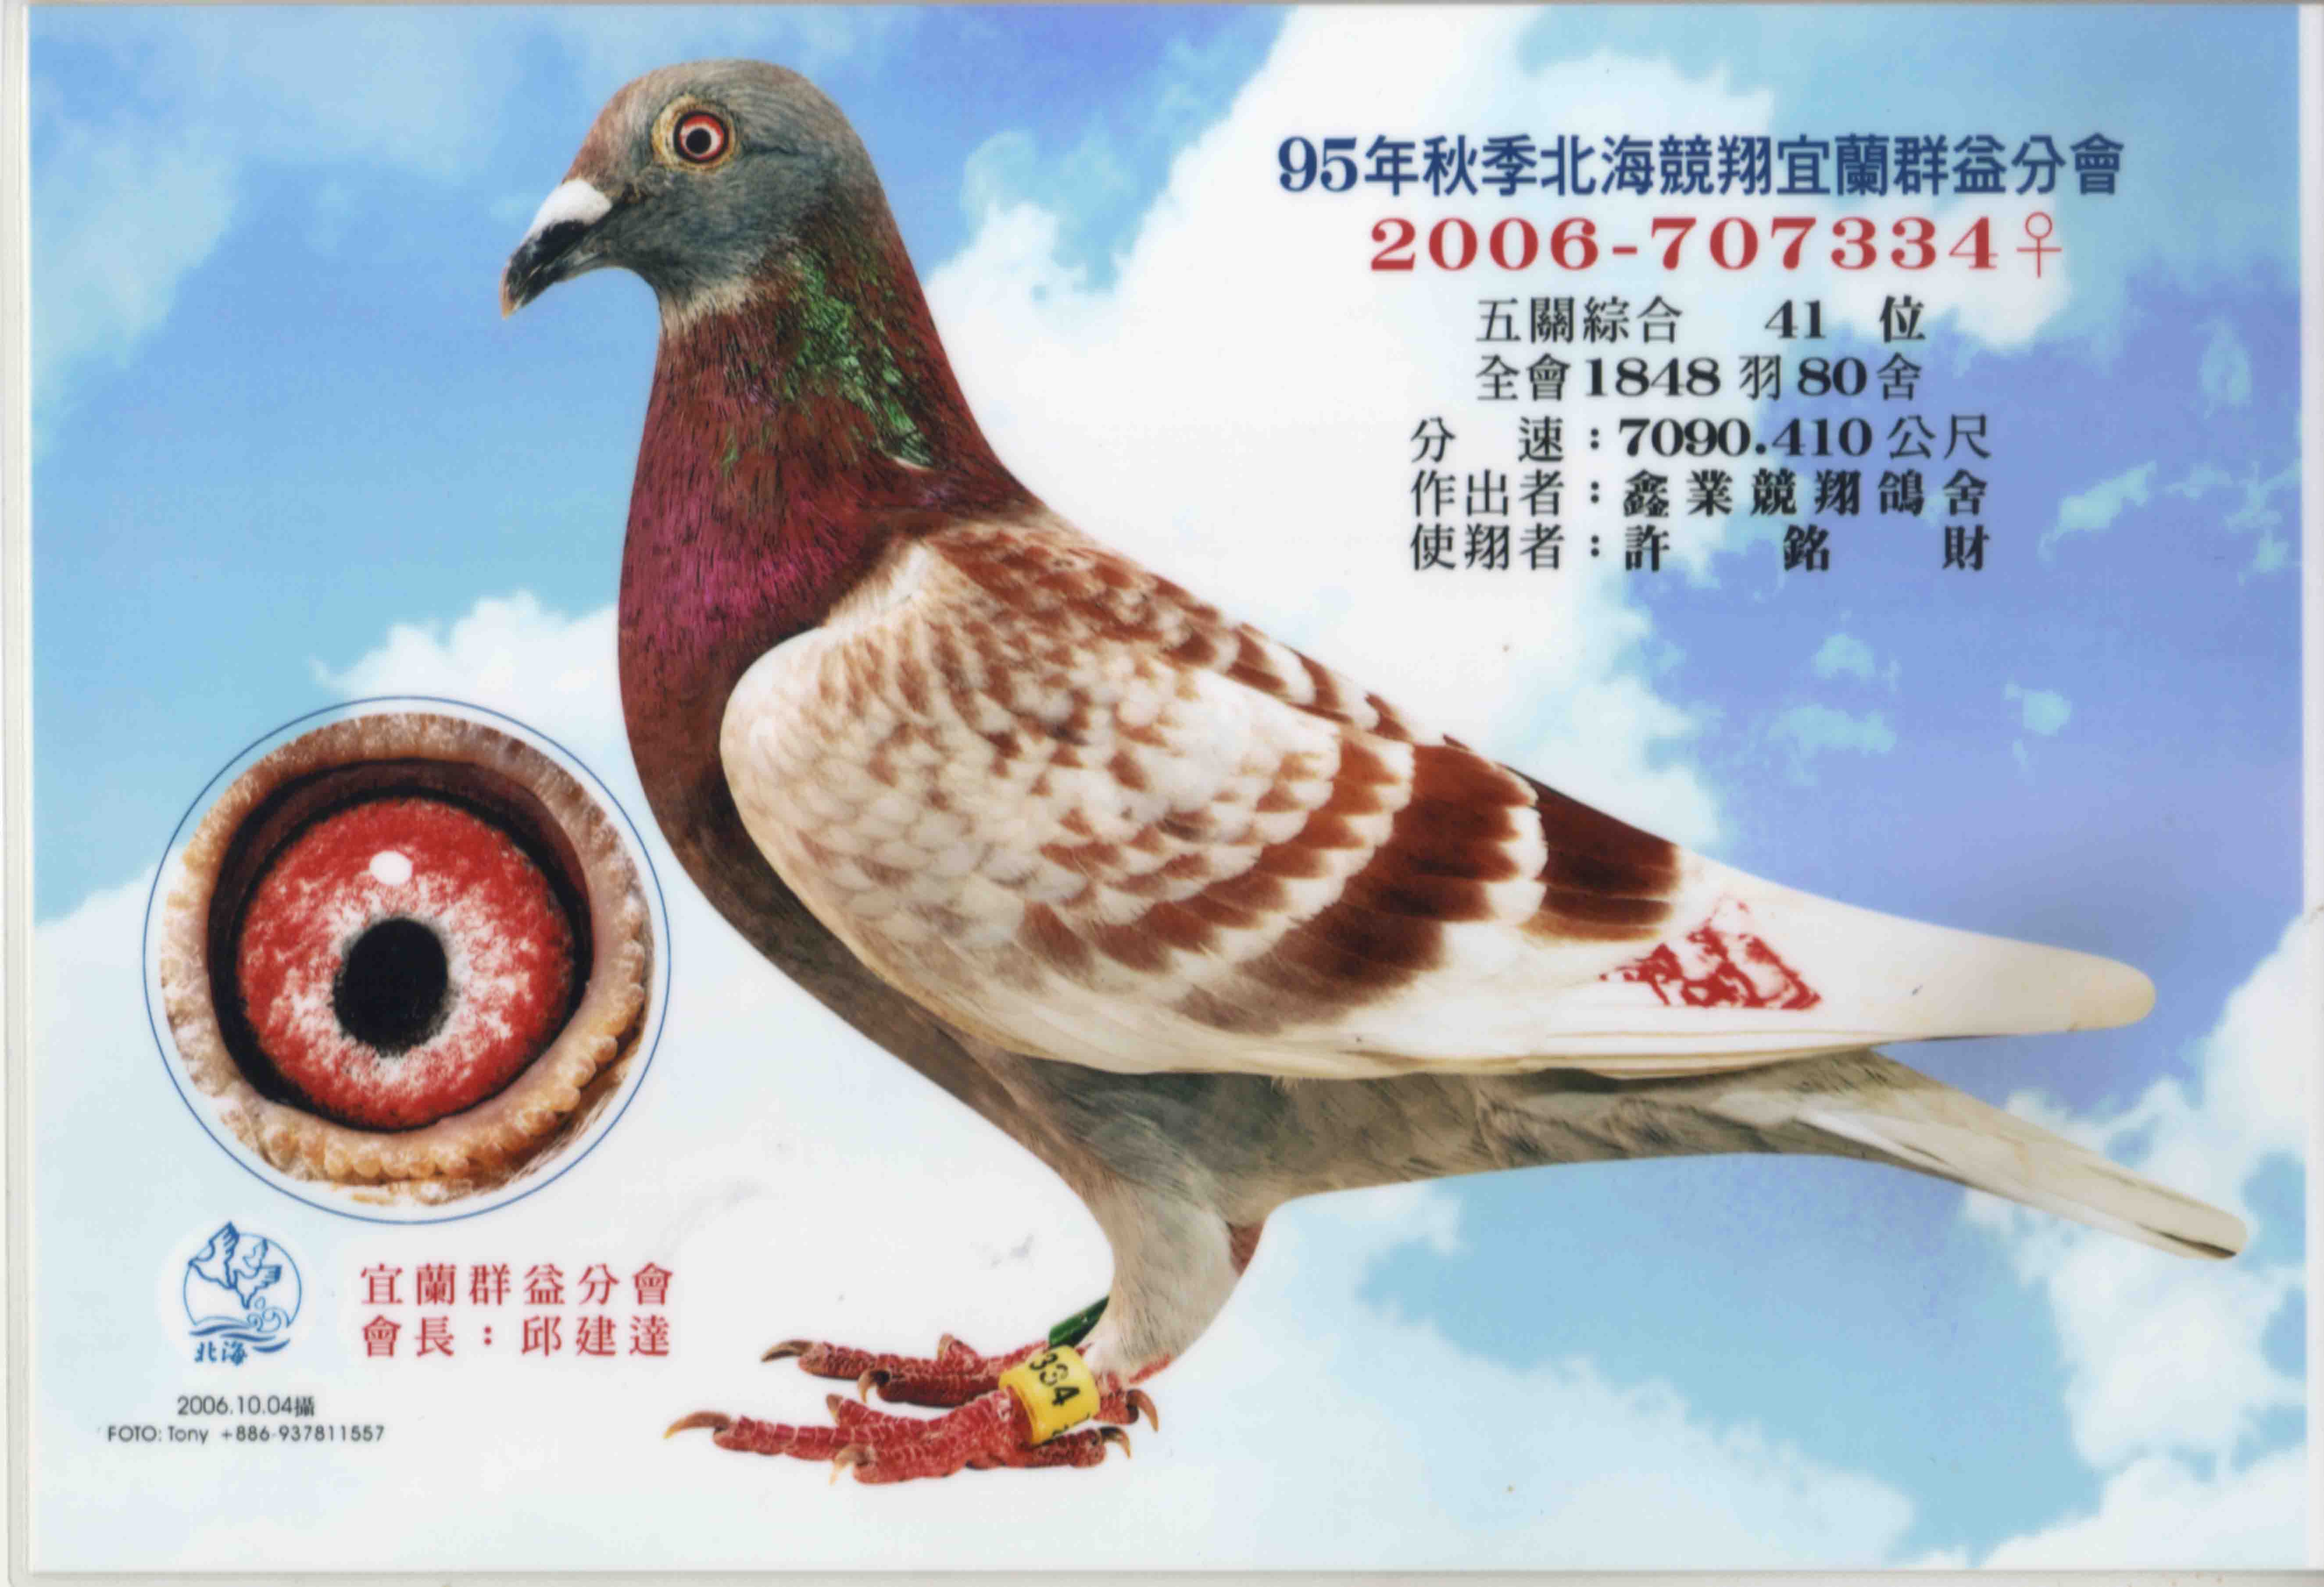 台湾鑫业鸽舍名鸽图片图片